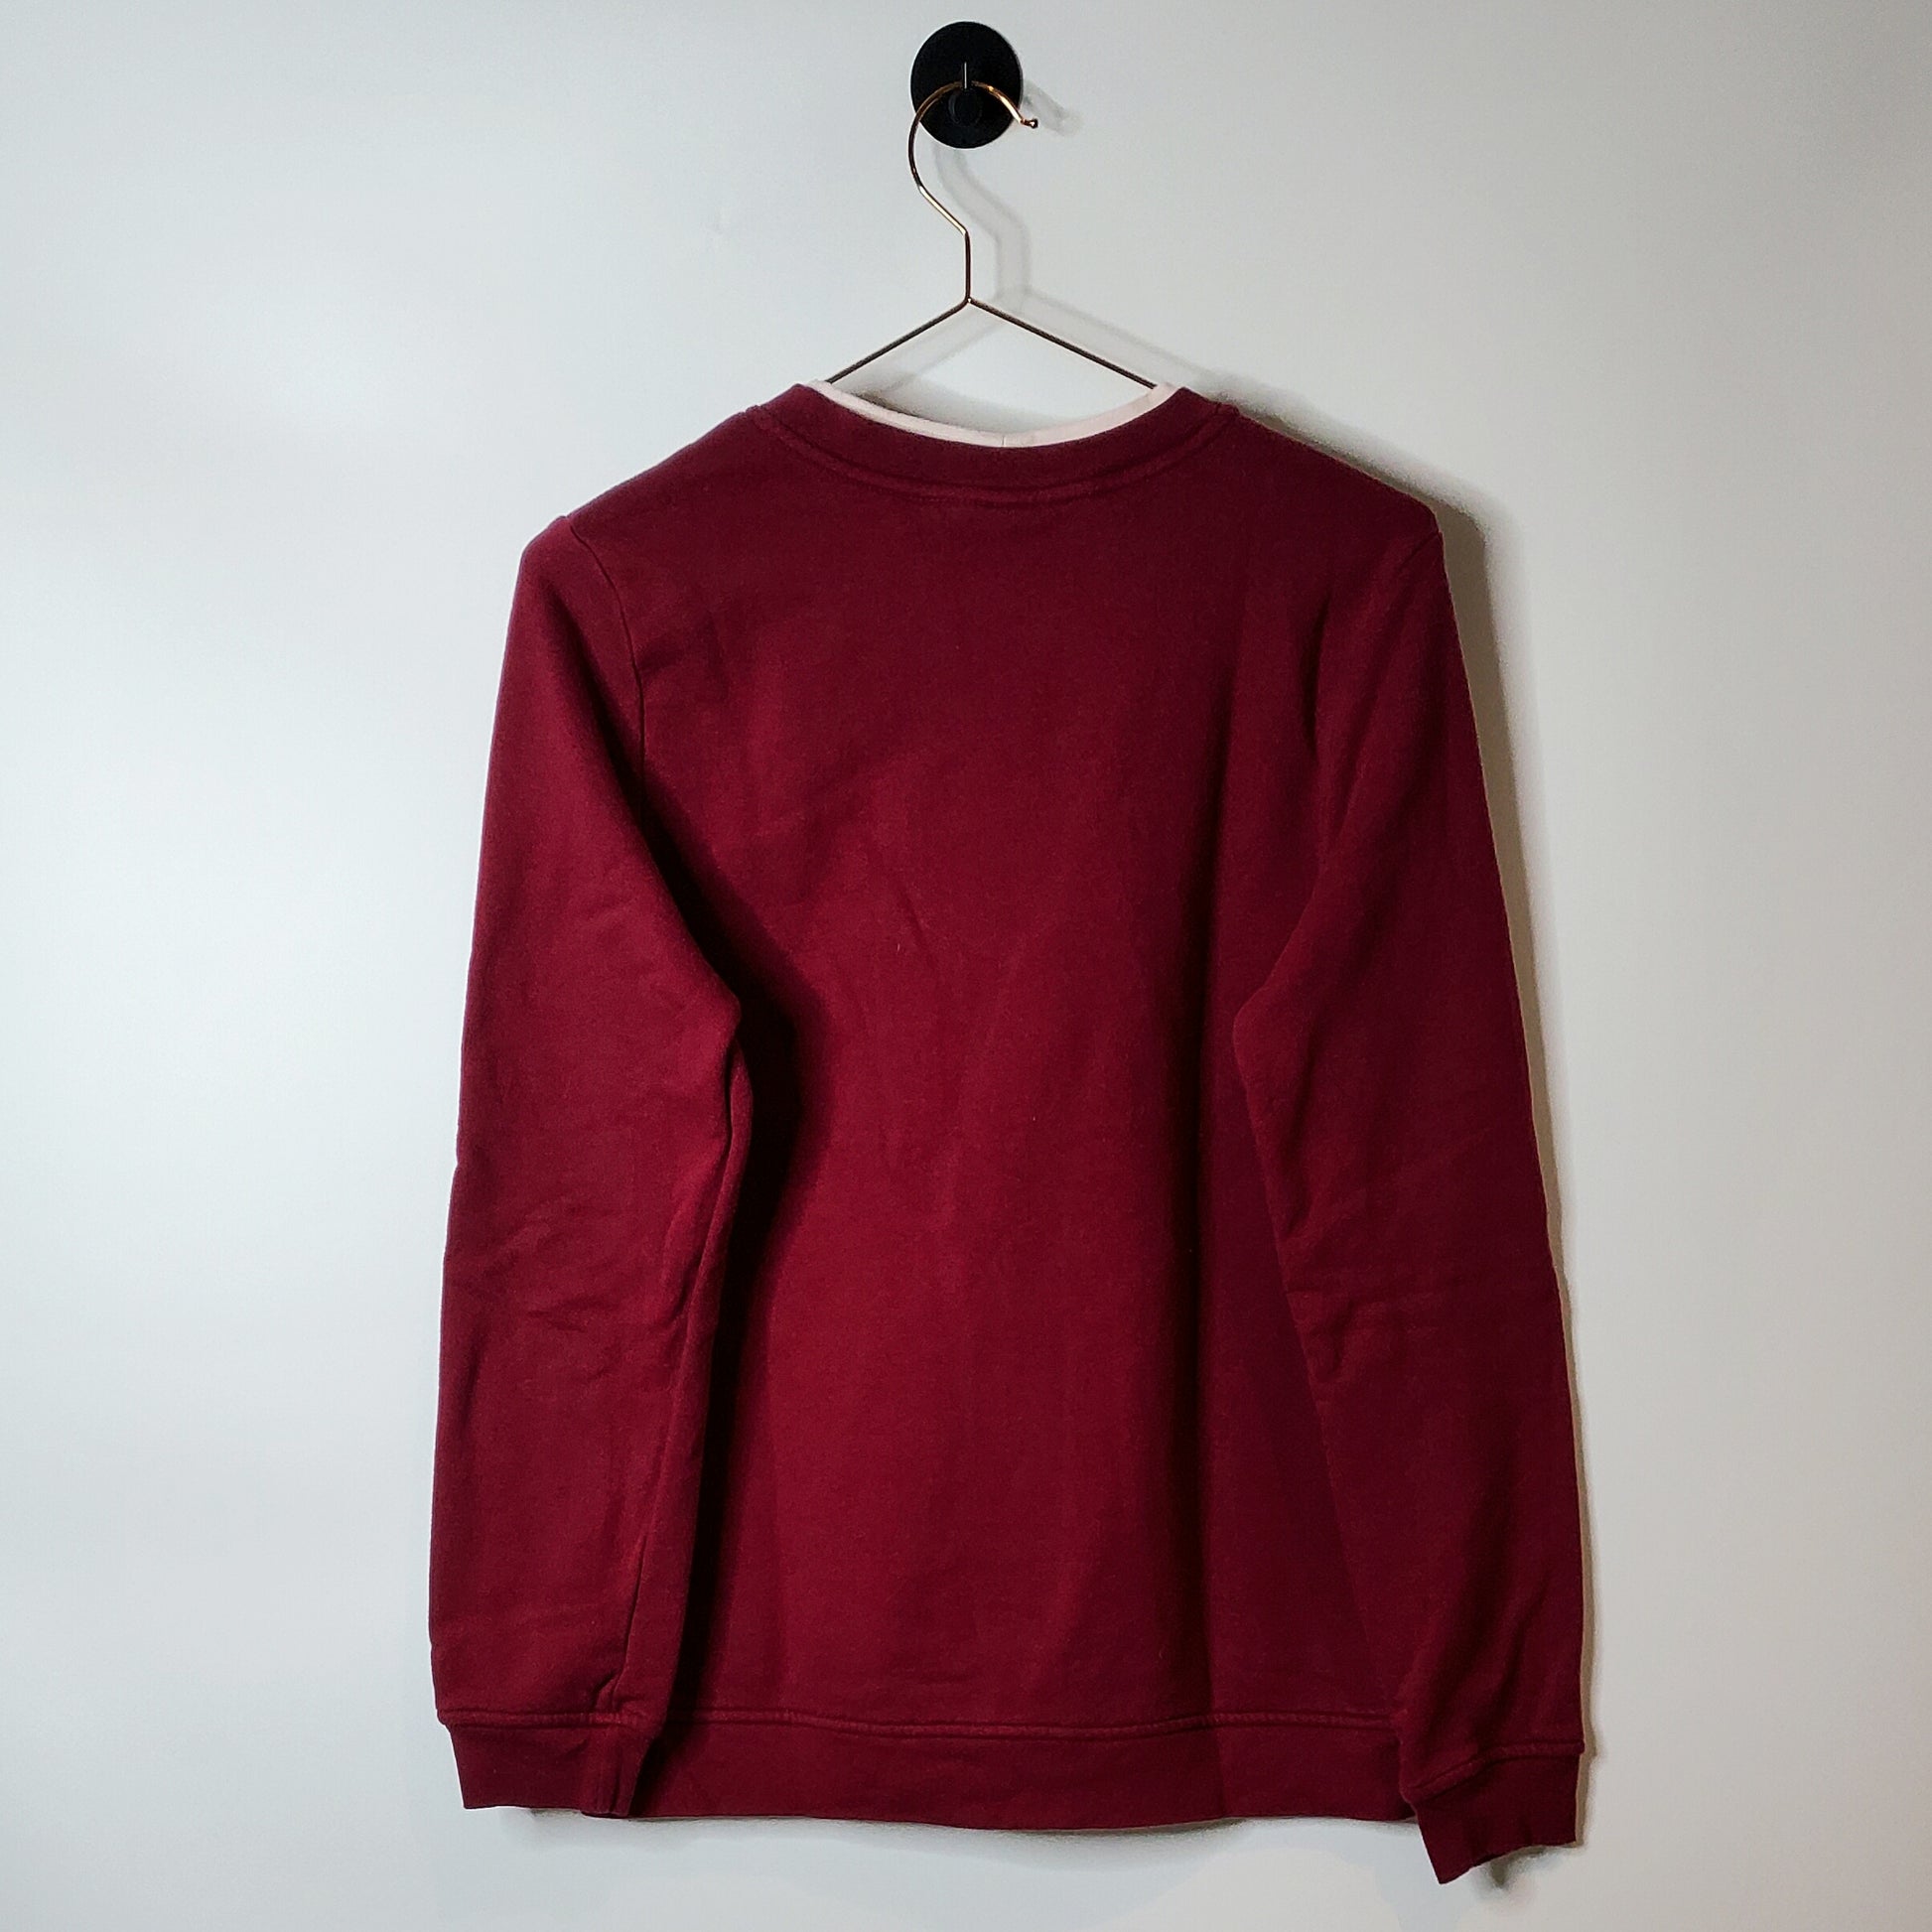 Vintage 90's Breckenridge Dream Catcher Sweatshirt Red Size M